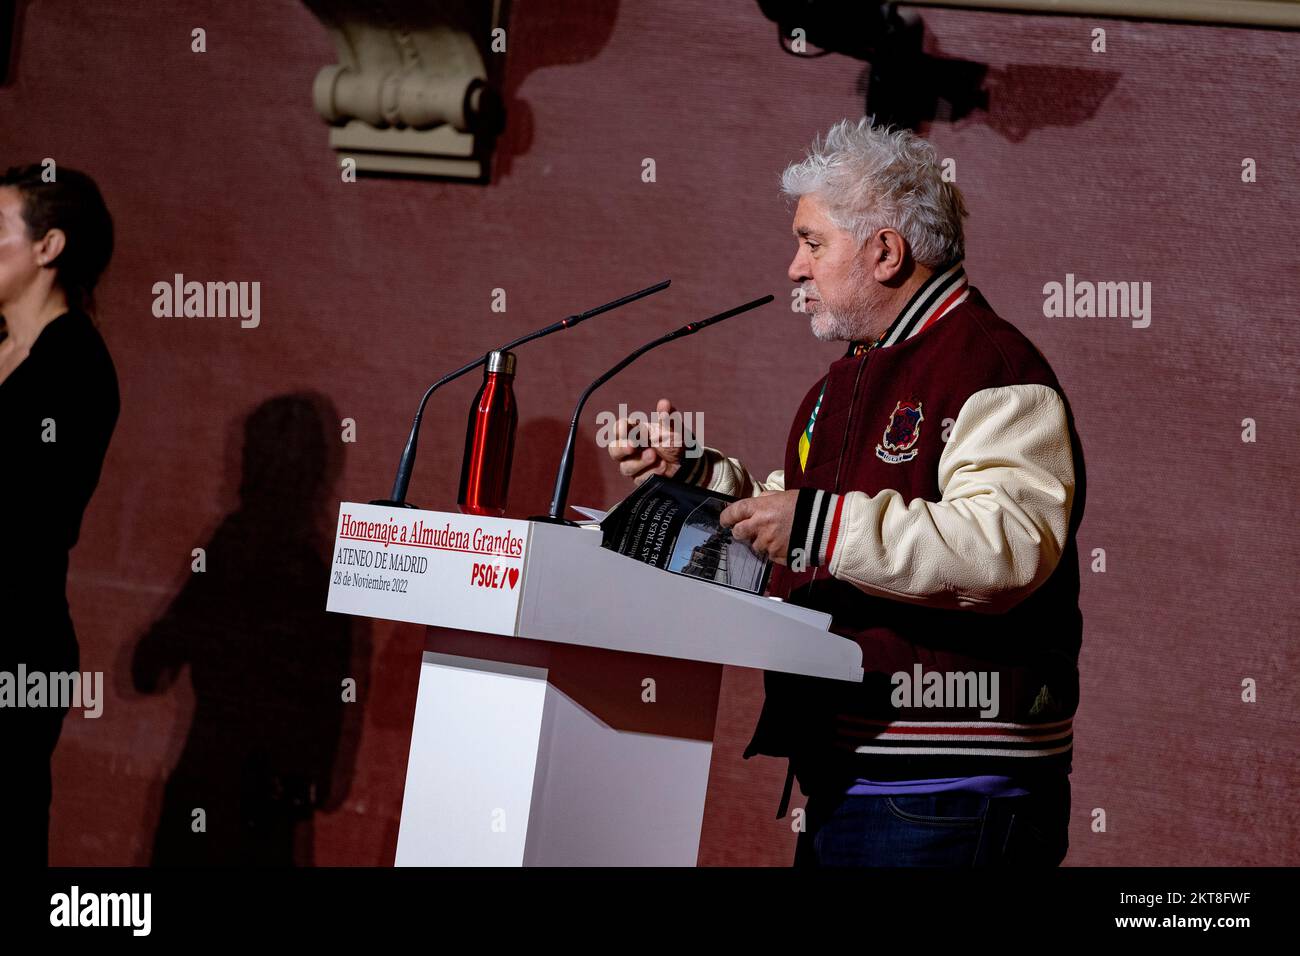 Pedro Almodovar Caballero. Regista, sceneggiatore e produttore spagnolo in omaggio all'Almudena Grandes. MADRID, SPAGNA - 28 NOVEMBRE 2022. Foto Stock